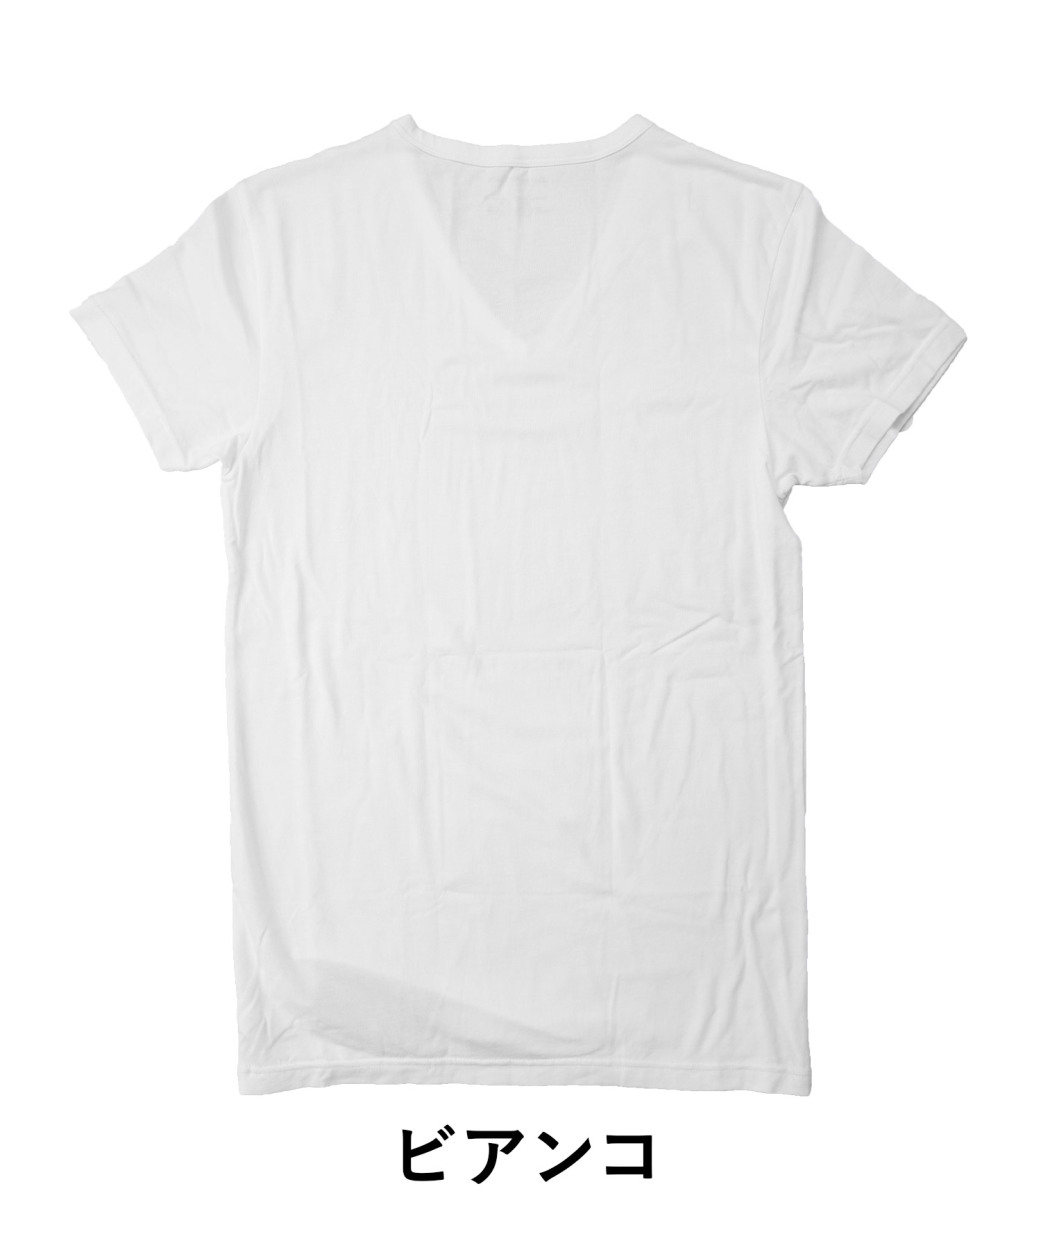 エンポリオアルマーニ Tシャツ メンズ 半袖 Vネック 無地 ブランド 